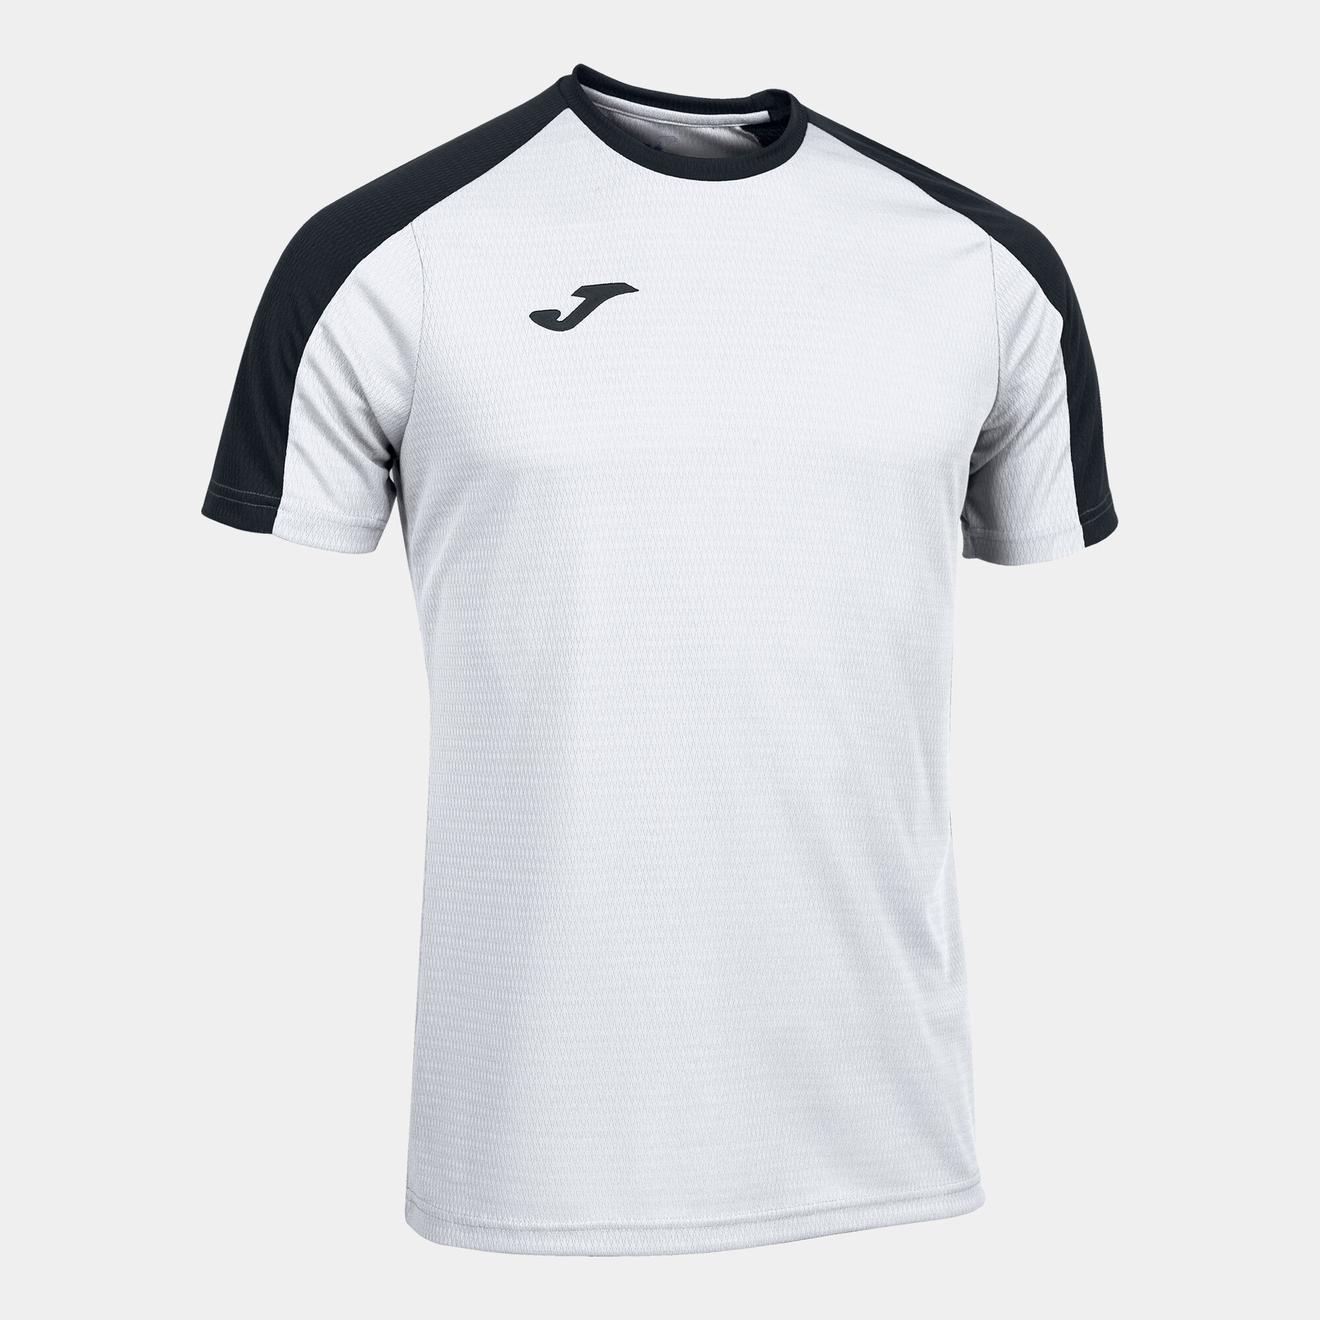 Oferta de Camiseta manga corta hombre Eco Championship blanco negro por $17,56 en Joma